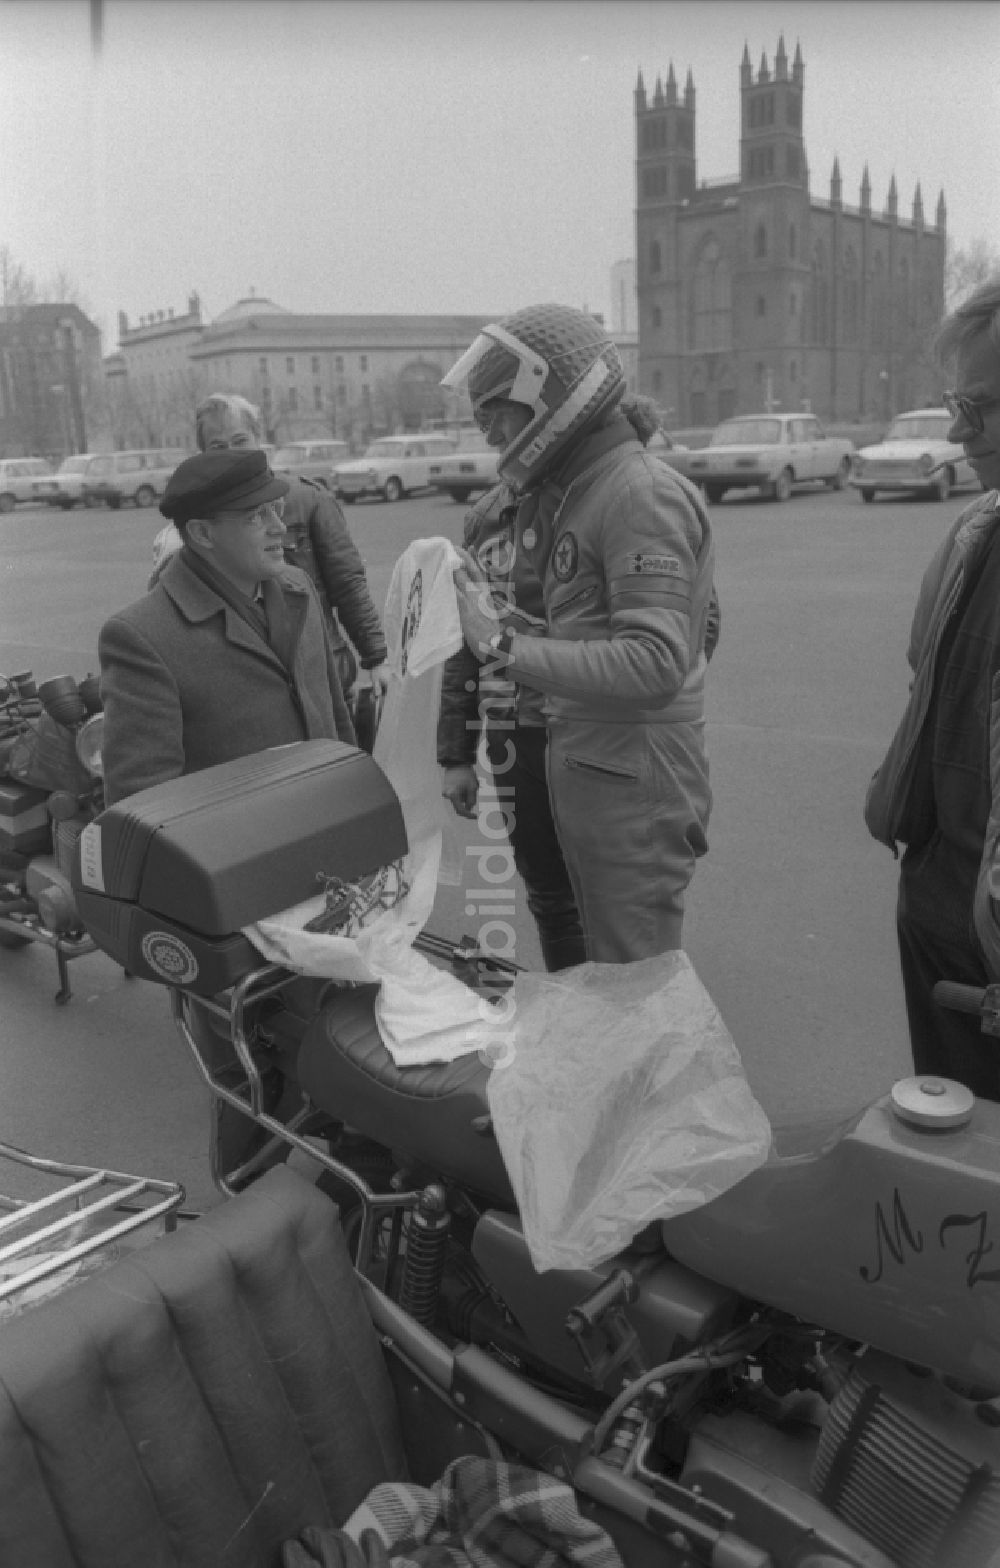 Berlin: Politiker Gregor Gysi mit einem Motorrad MZ in Berlin auf dem Gebiet der ehemaligen DDR, Deutsche Demokratische Republik